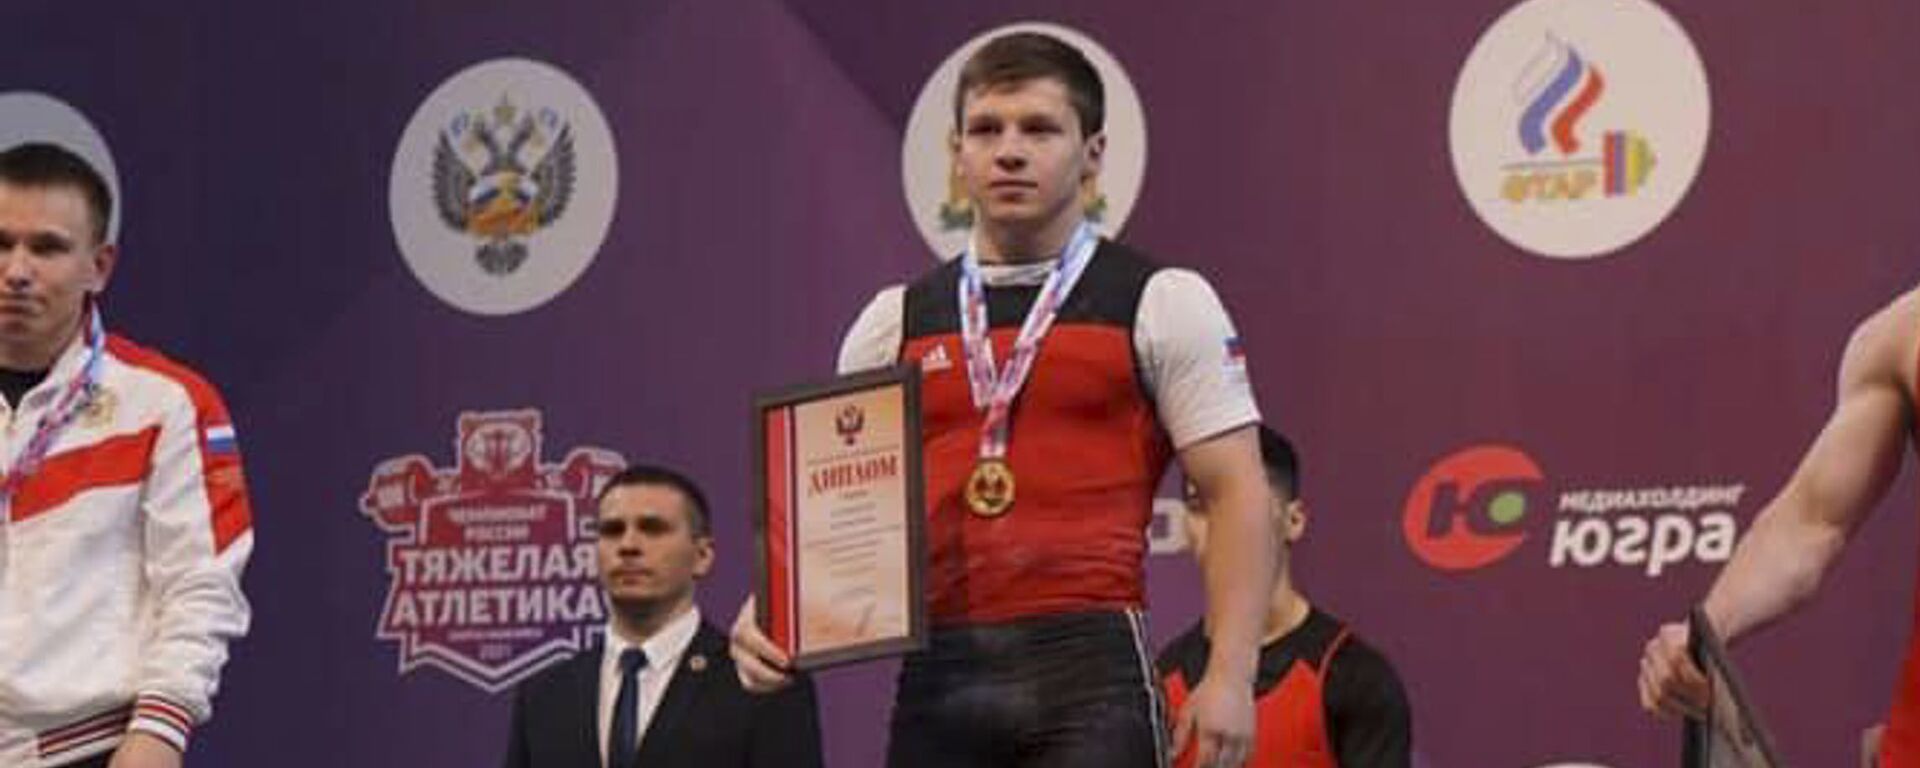 Элкан Гвазава стал чемпионом России по тяжелой атлетике - Sputnik Абхазия, 1920, 03.06.2021